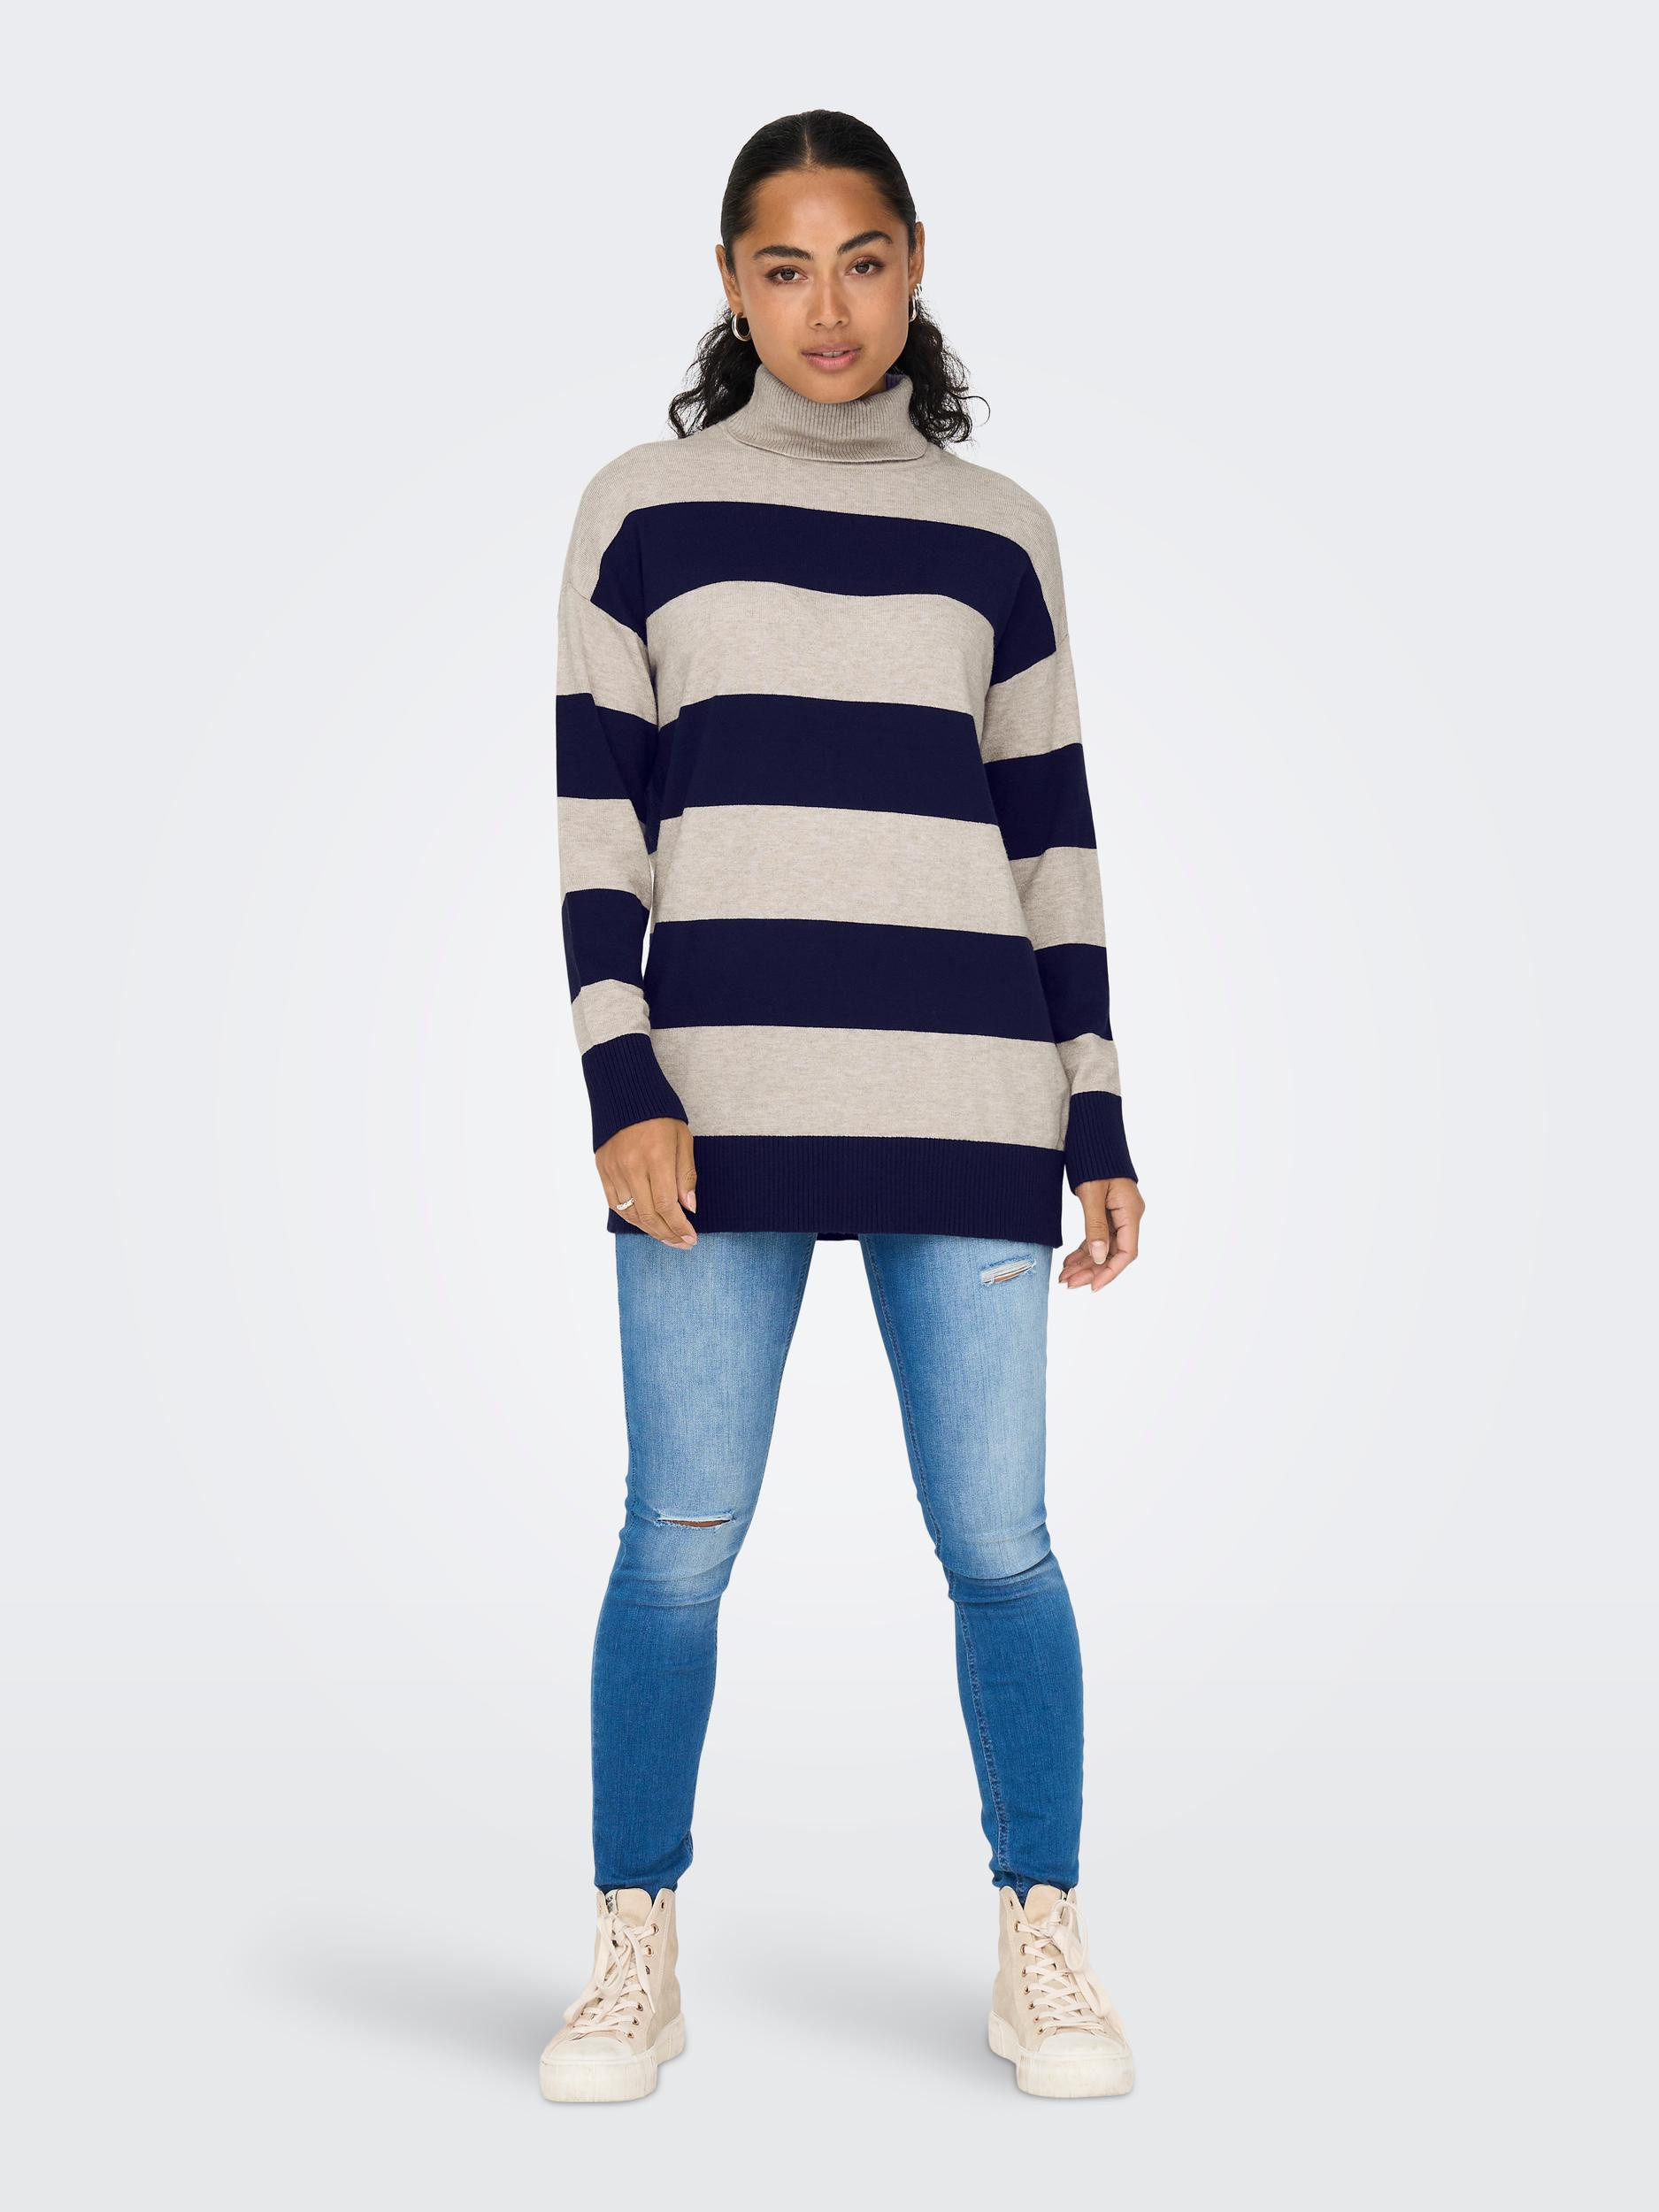 Only - Striped knit turtleneck, Light Beige, large image number 2